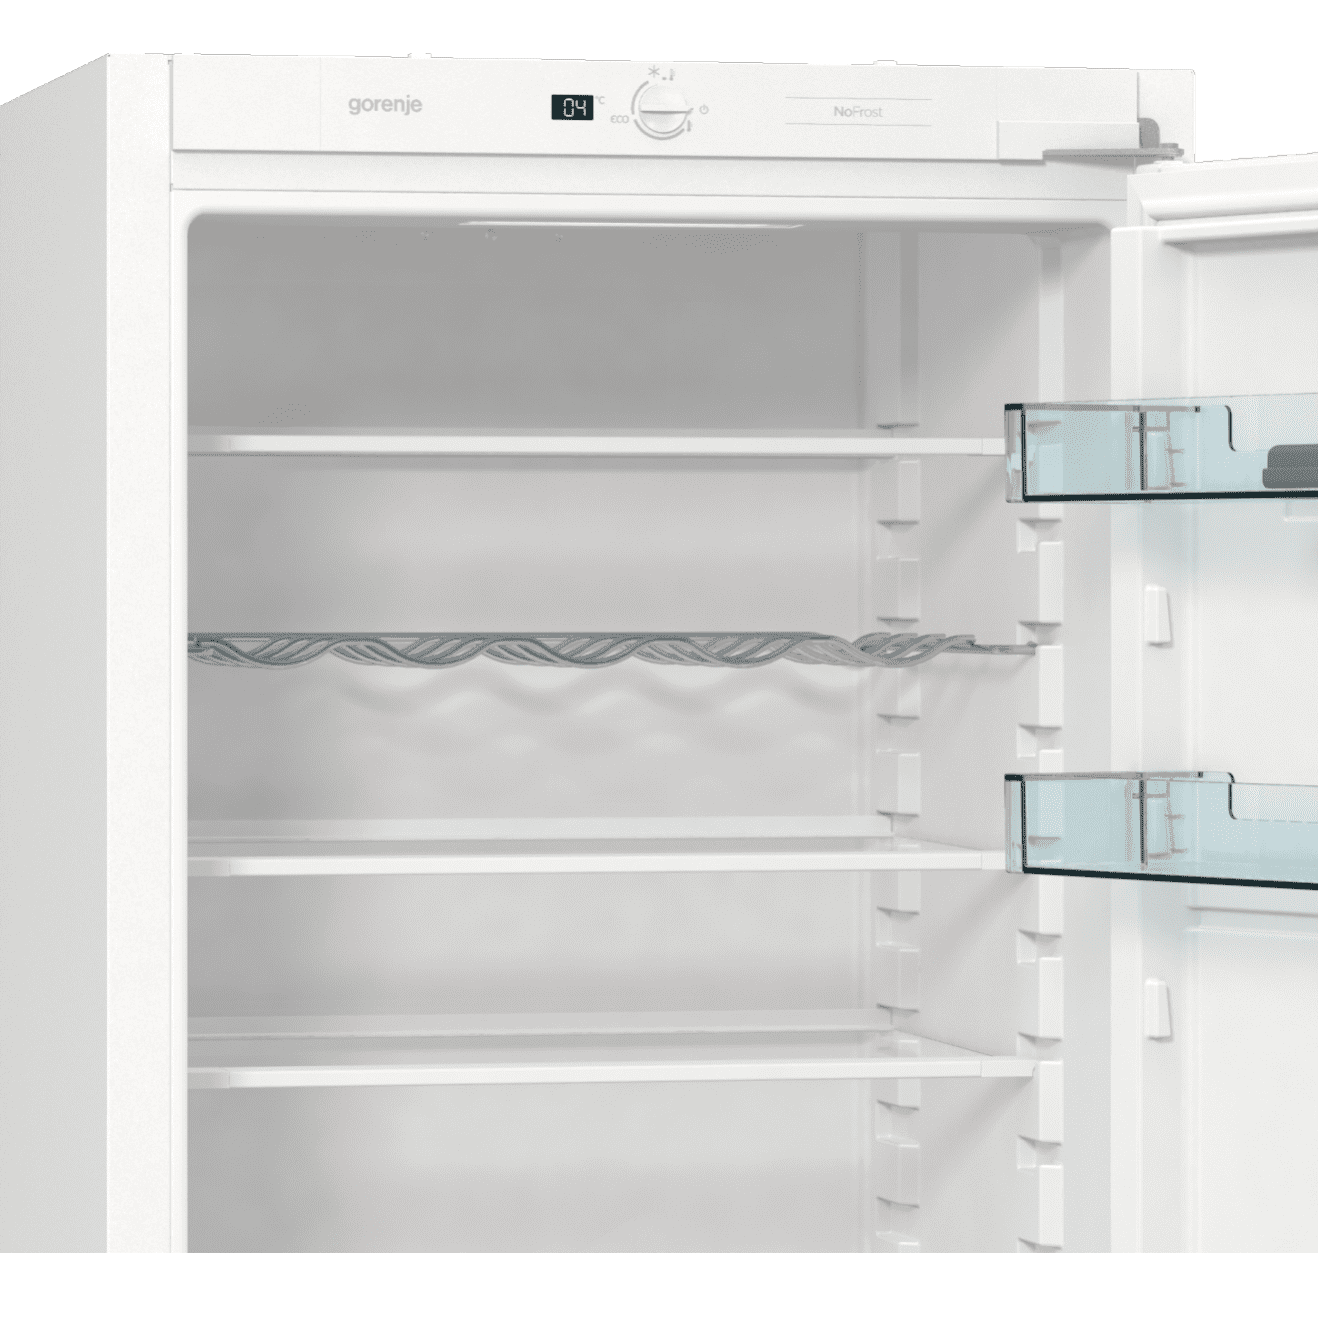 Gorenje nrki418fe0. Встраиваемый холодильник Gorenje RKI 2181 e1. Холодильник Gorenje nrki2181e1. Встраиваемый холодильник Gorenje RKI 4182 e1. Встроенный холодильник Gorenje nrki2181e1.